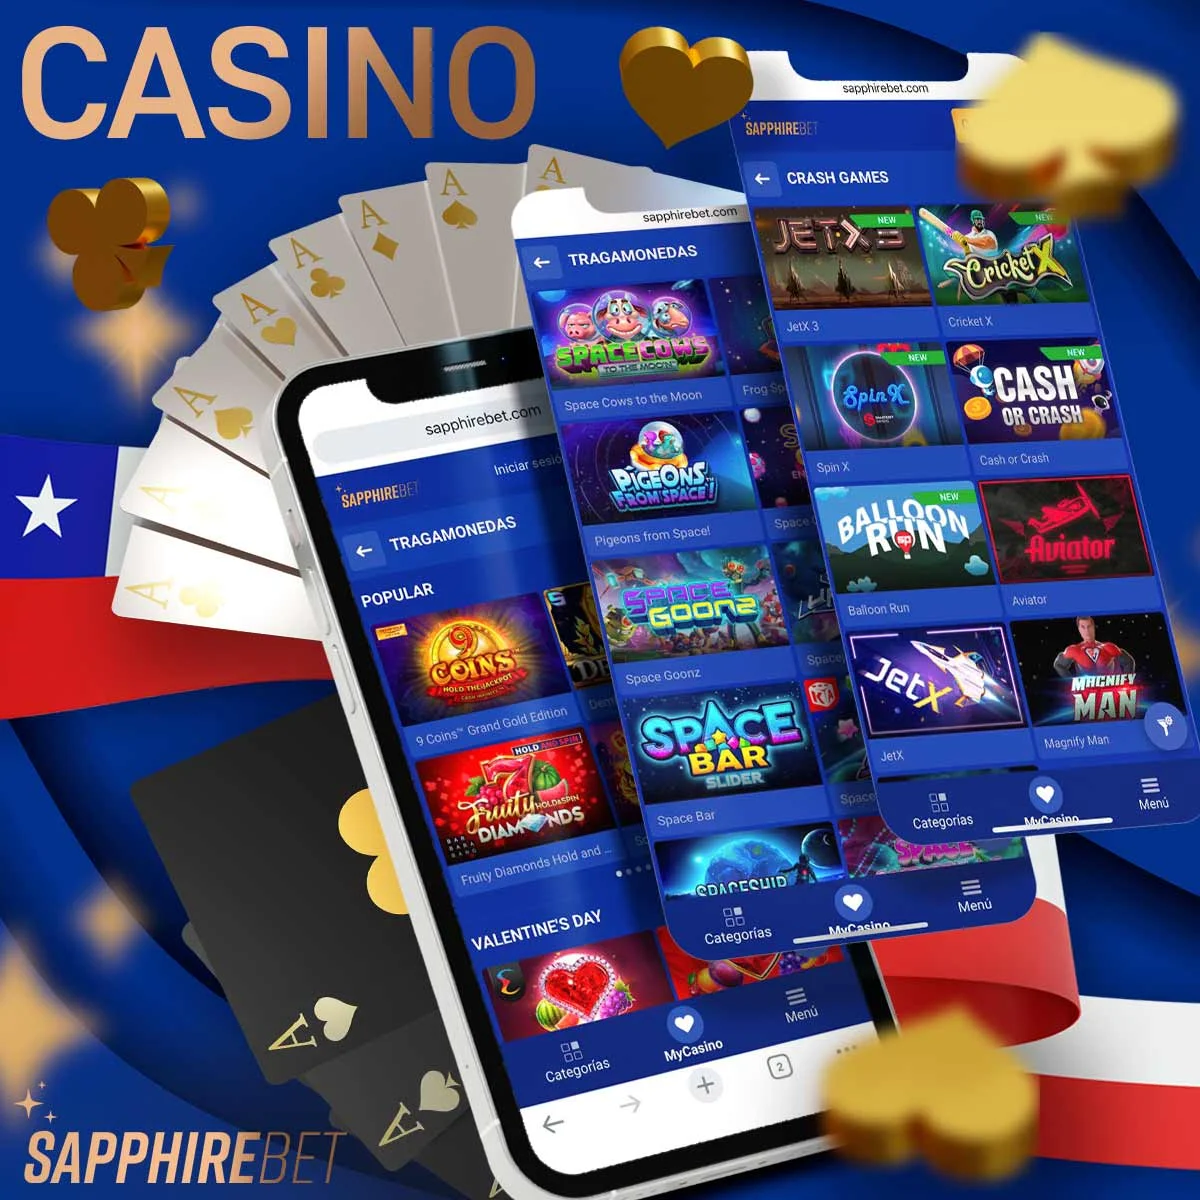 Casino con los mejores juegos y bonos en Sapphirebet casa de apuestas